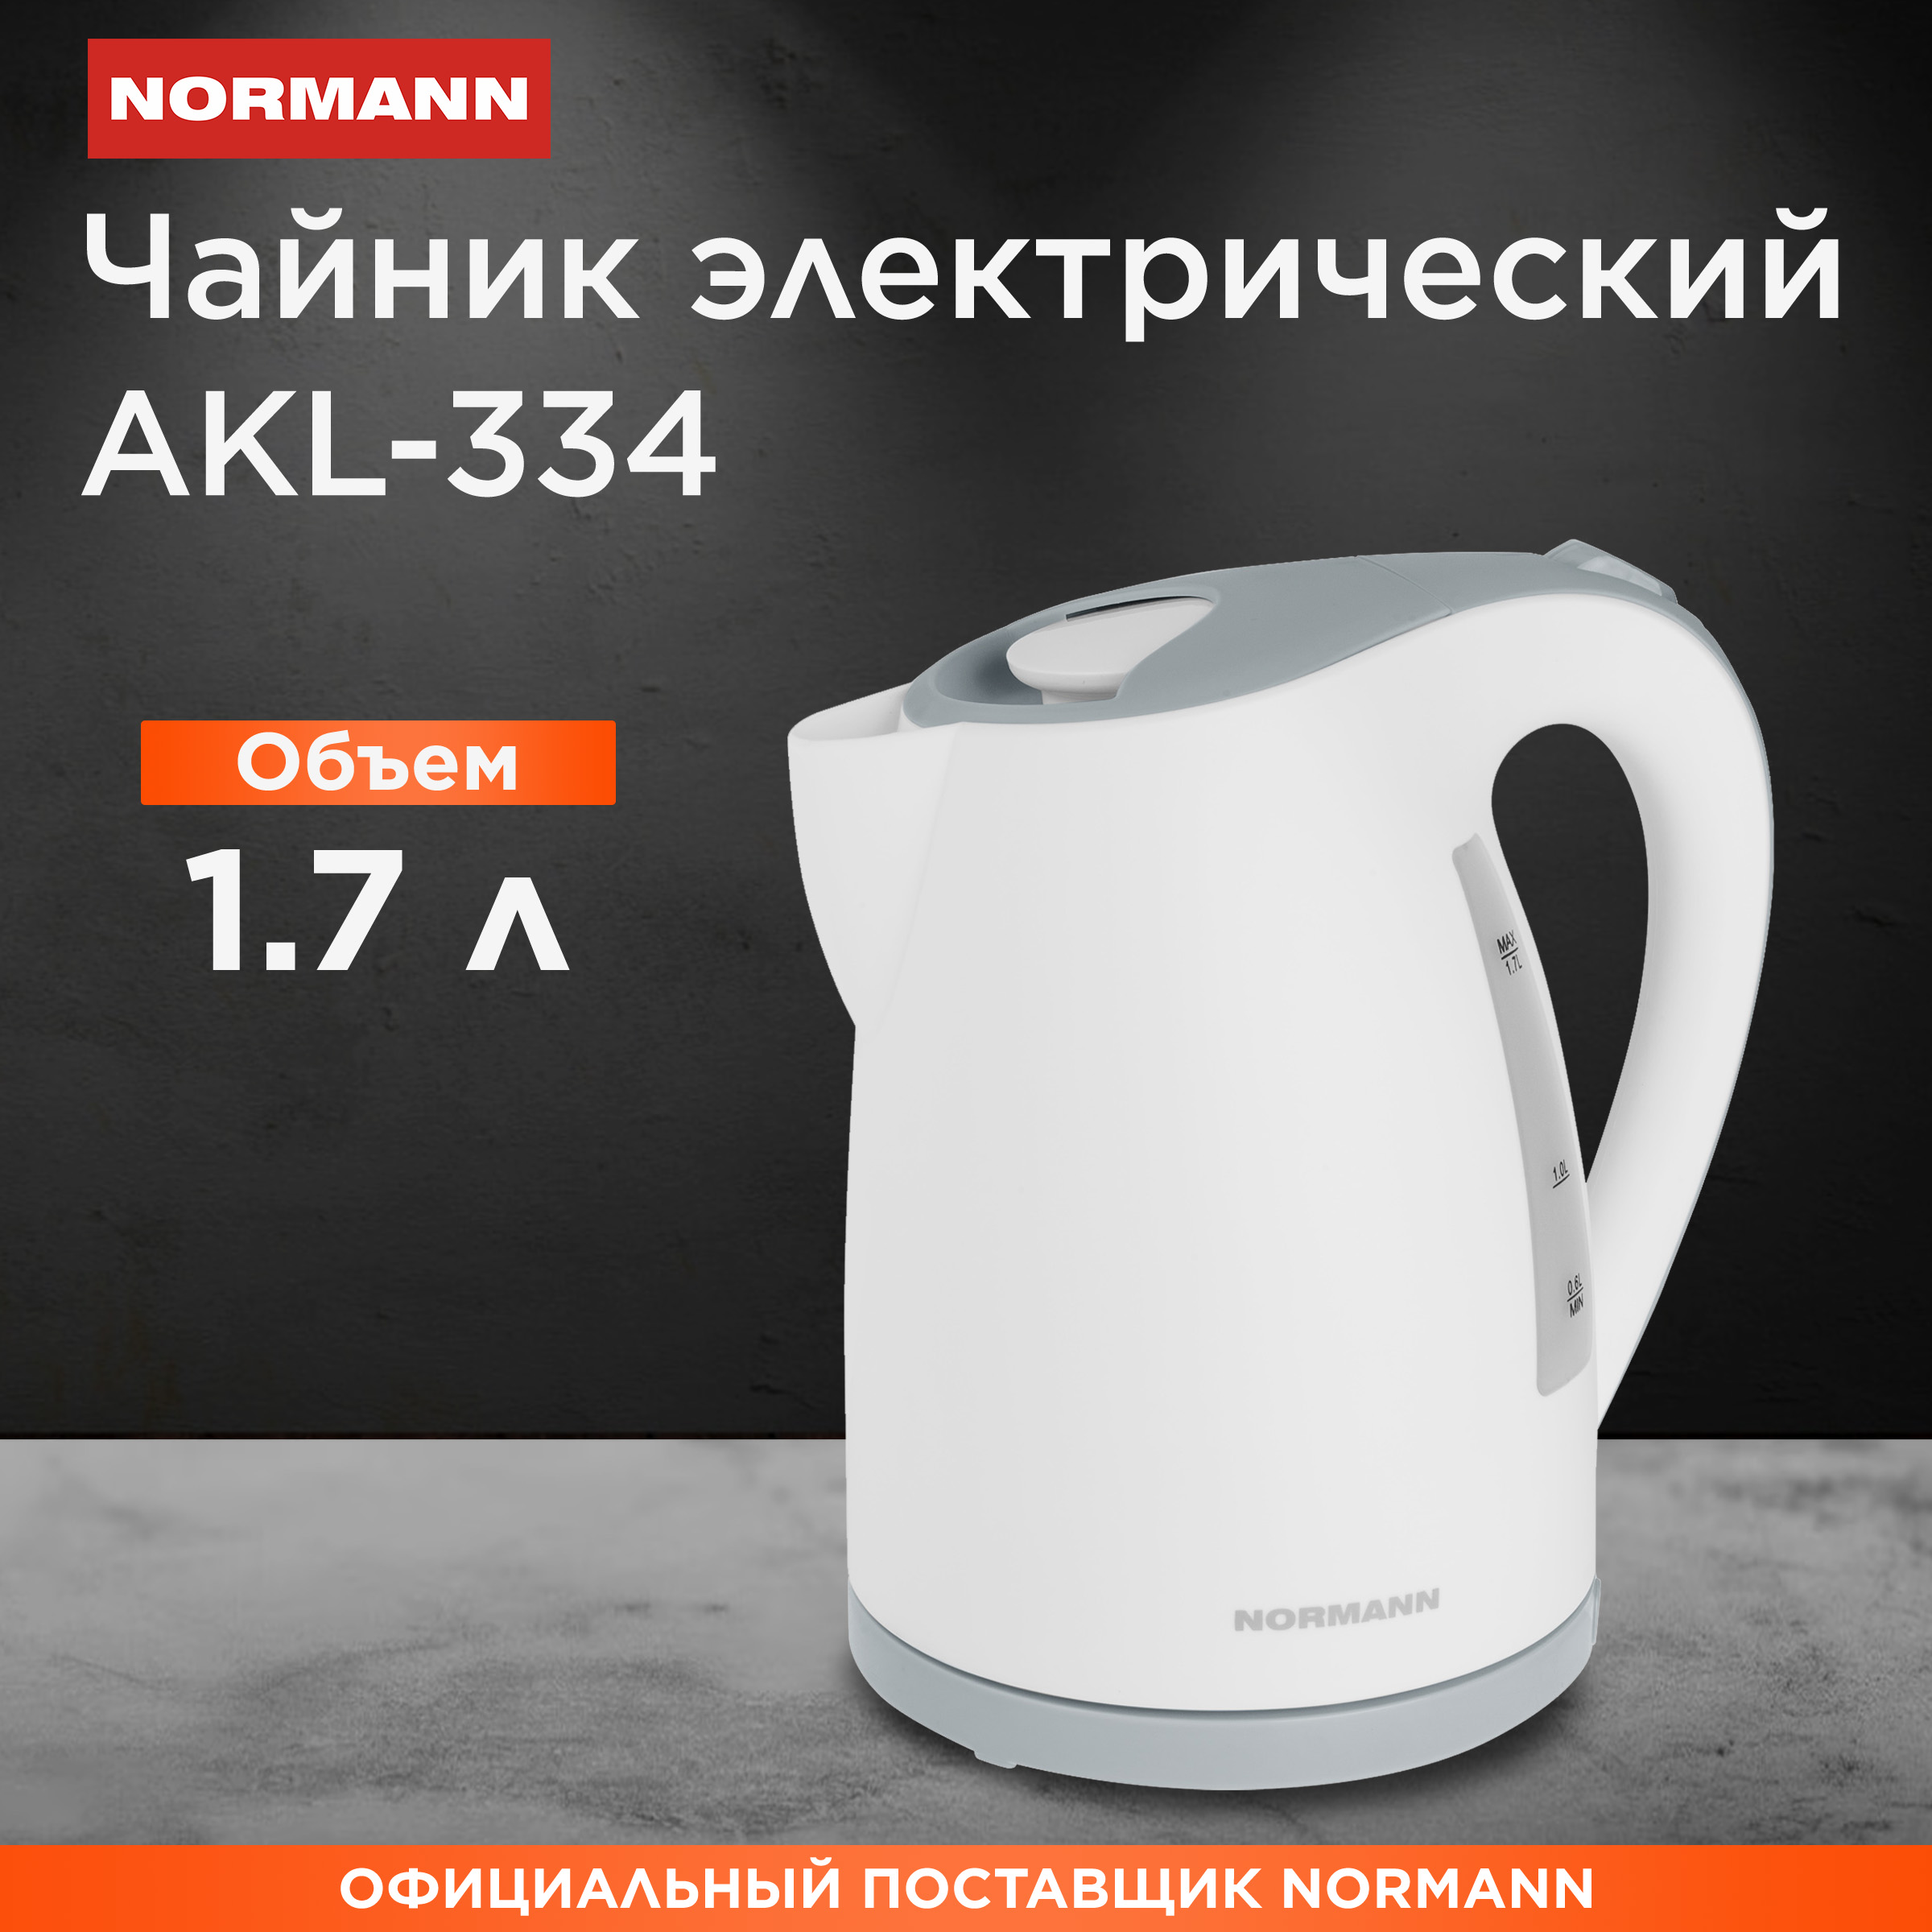 Чайник электрический NORMANN AKL-334 1.7 л белый, серый серьги со стразами калипсо плеть белый в сером